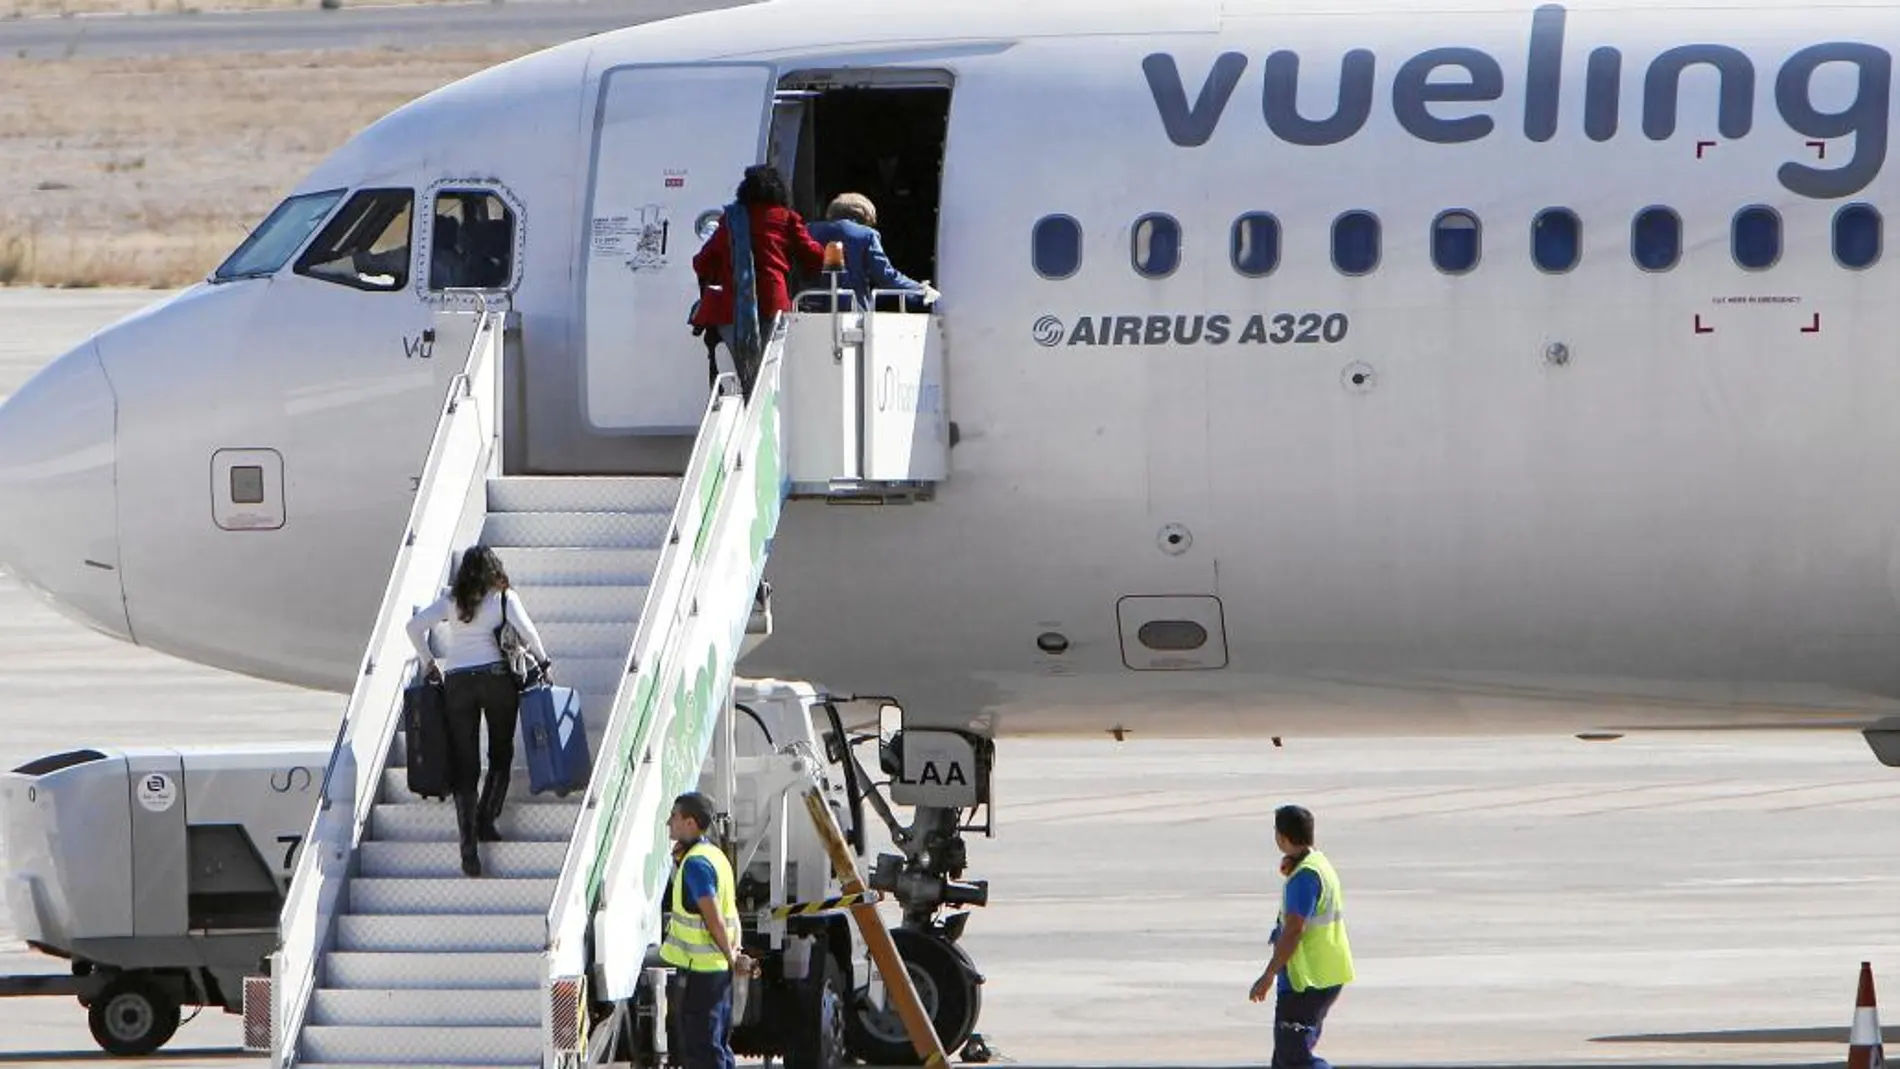 España sigue siendo uno de los principales mercados para la compañía aérea Vueling